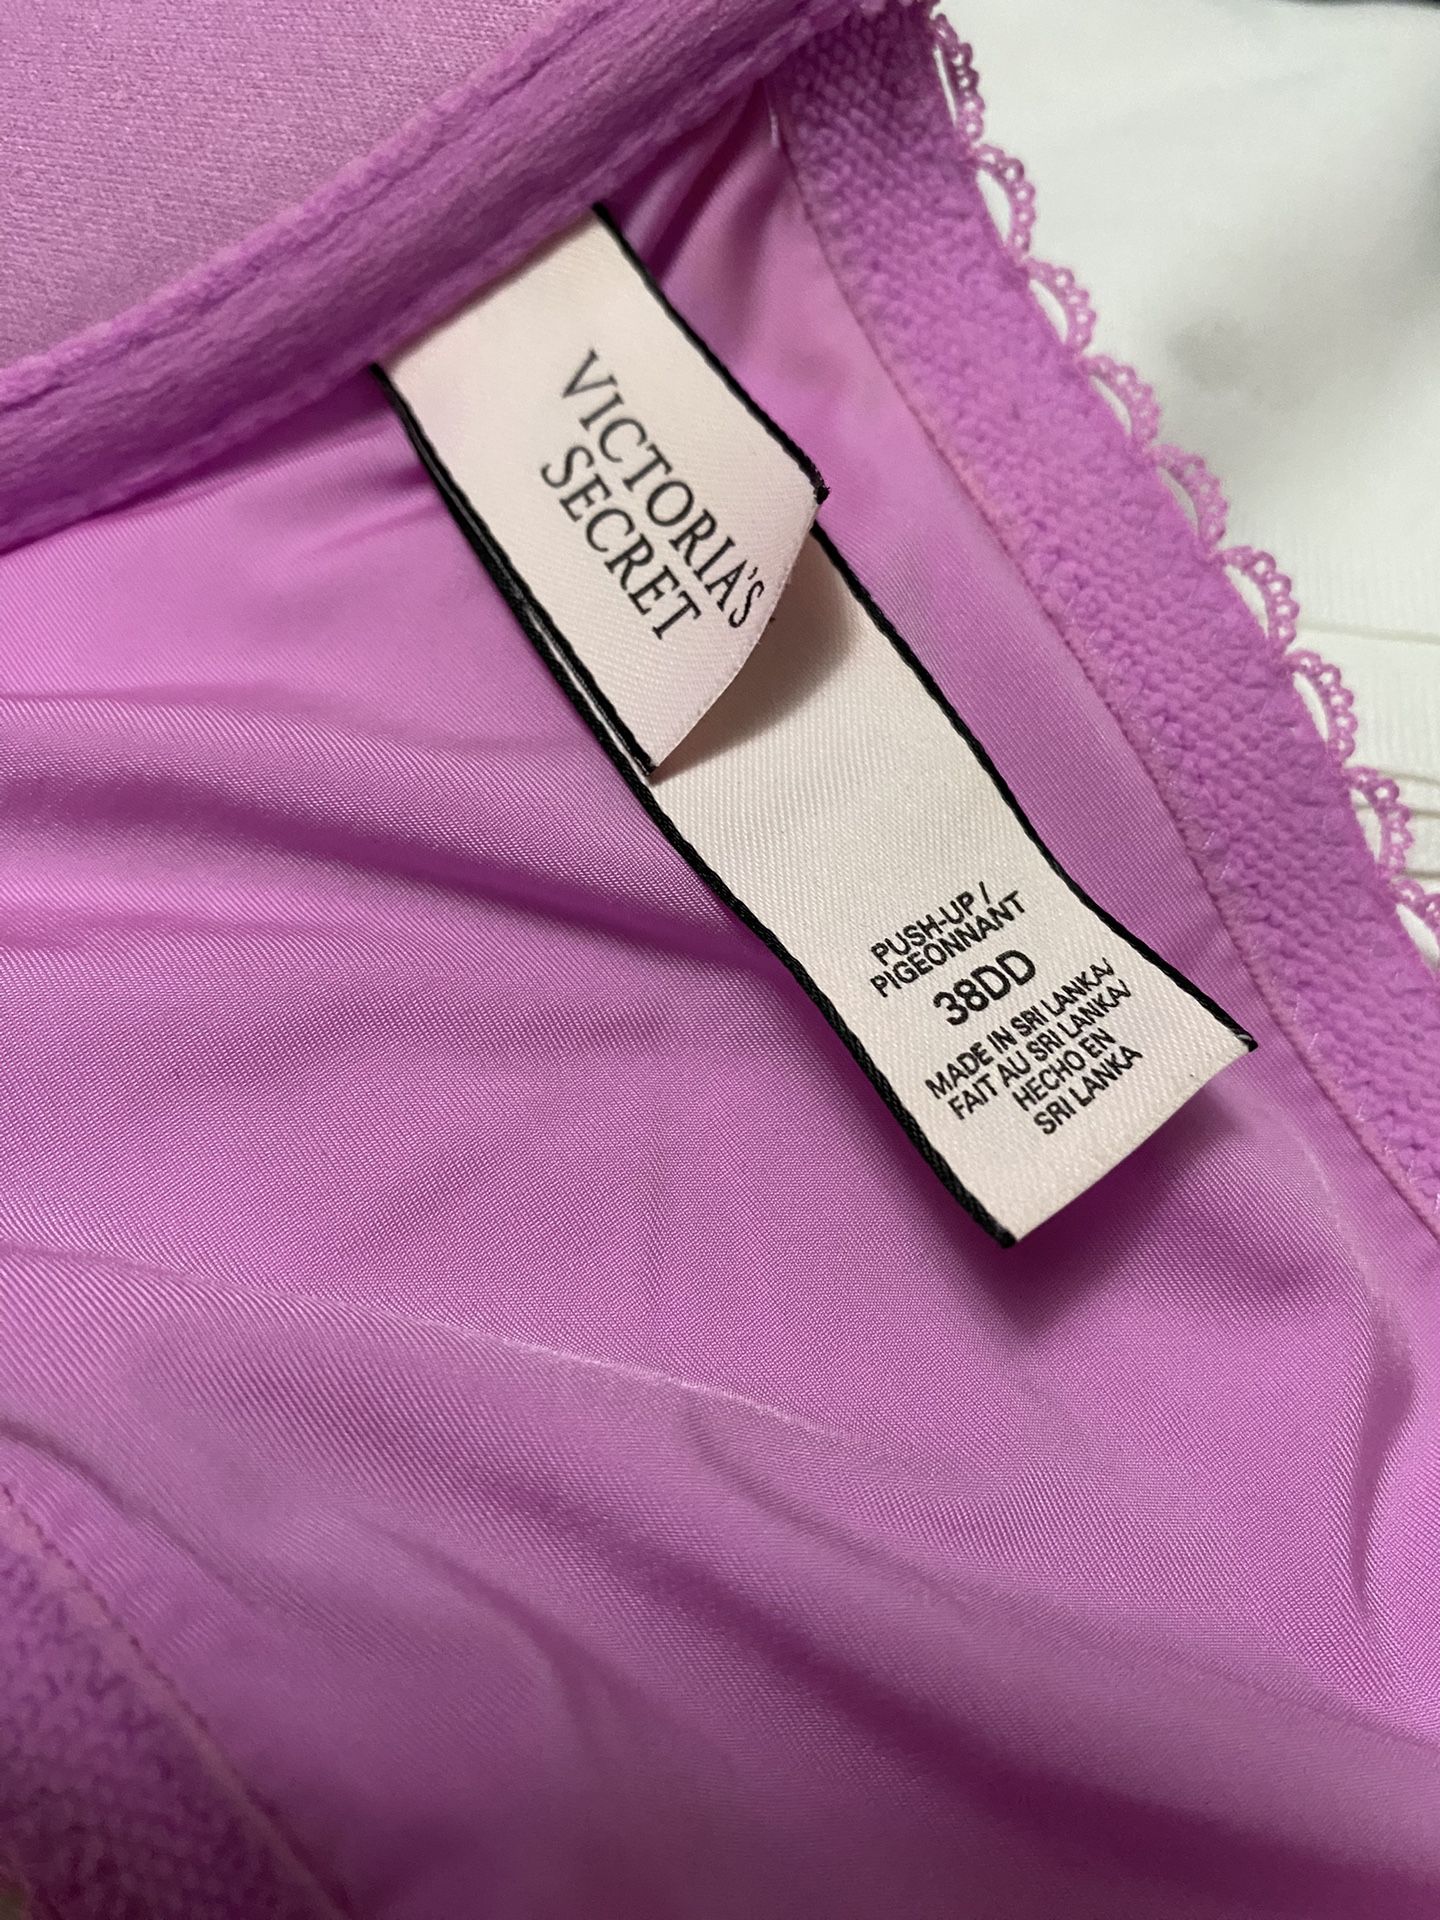 Victoria's Secret bra size 38DDD for Sale in Clayton, NC - OfferUp